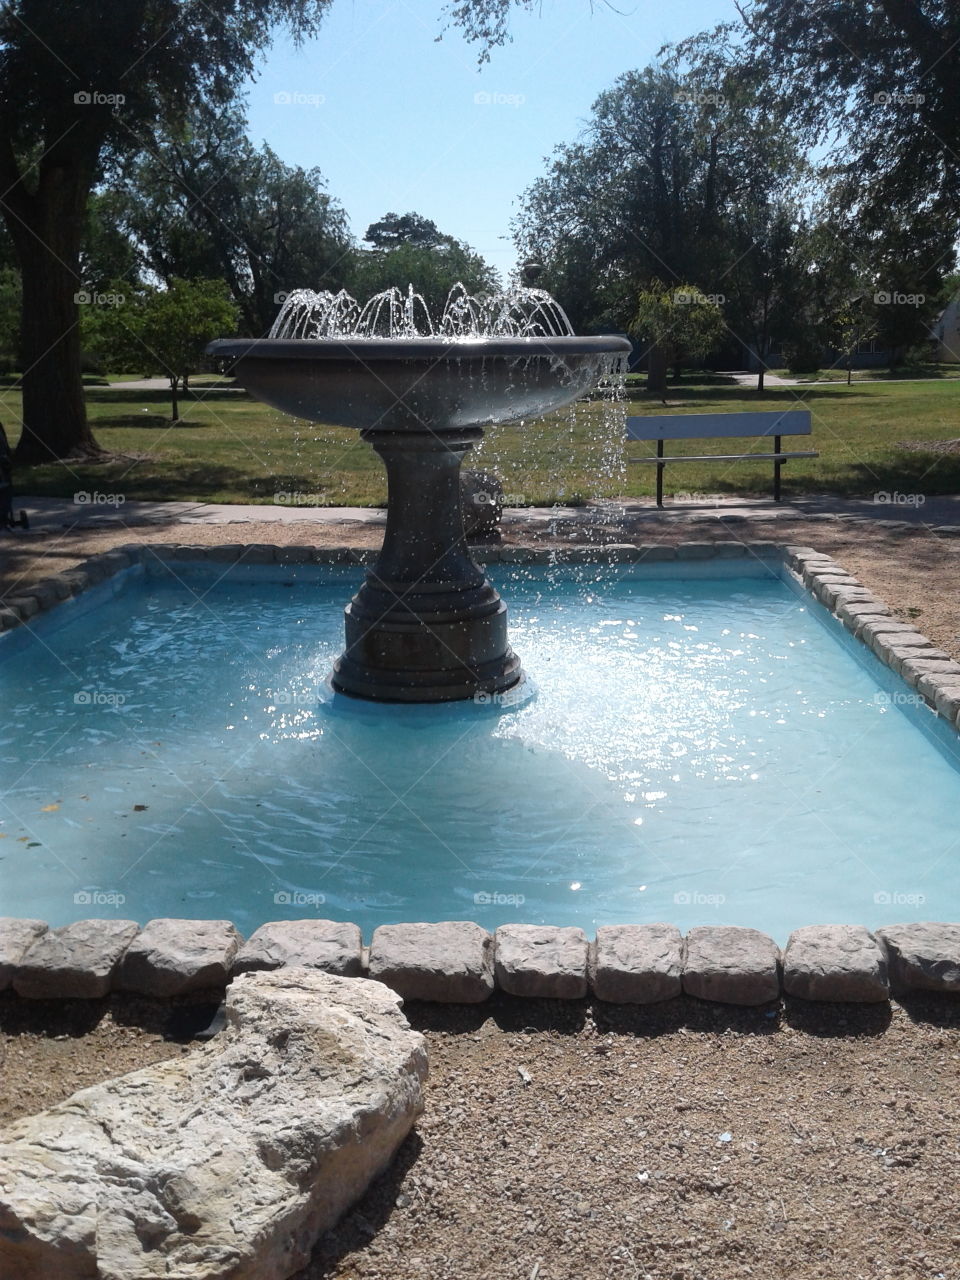 Fountain in Amarillo park